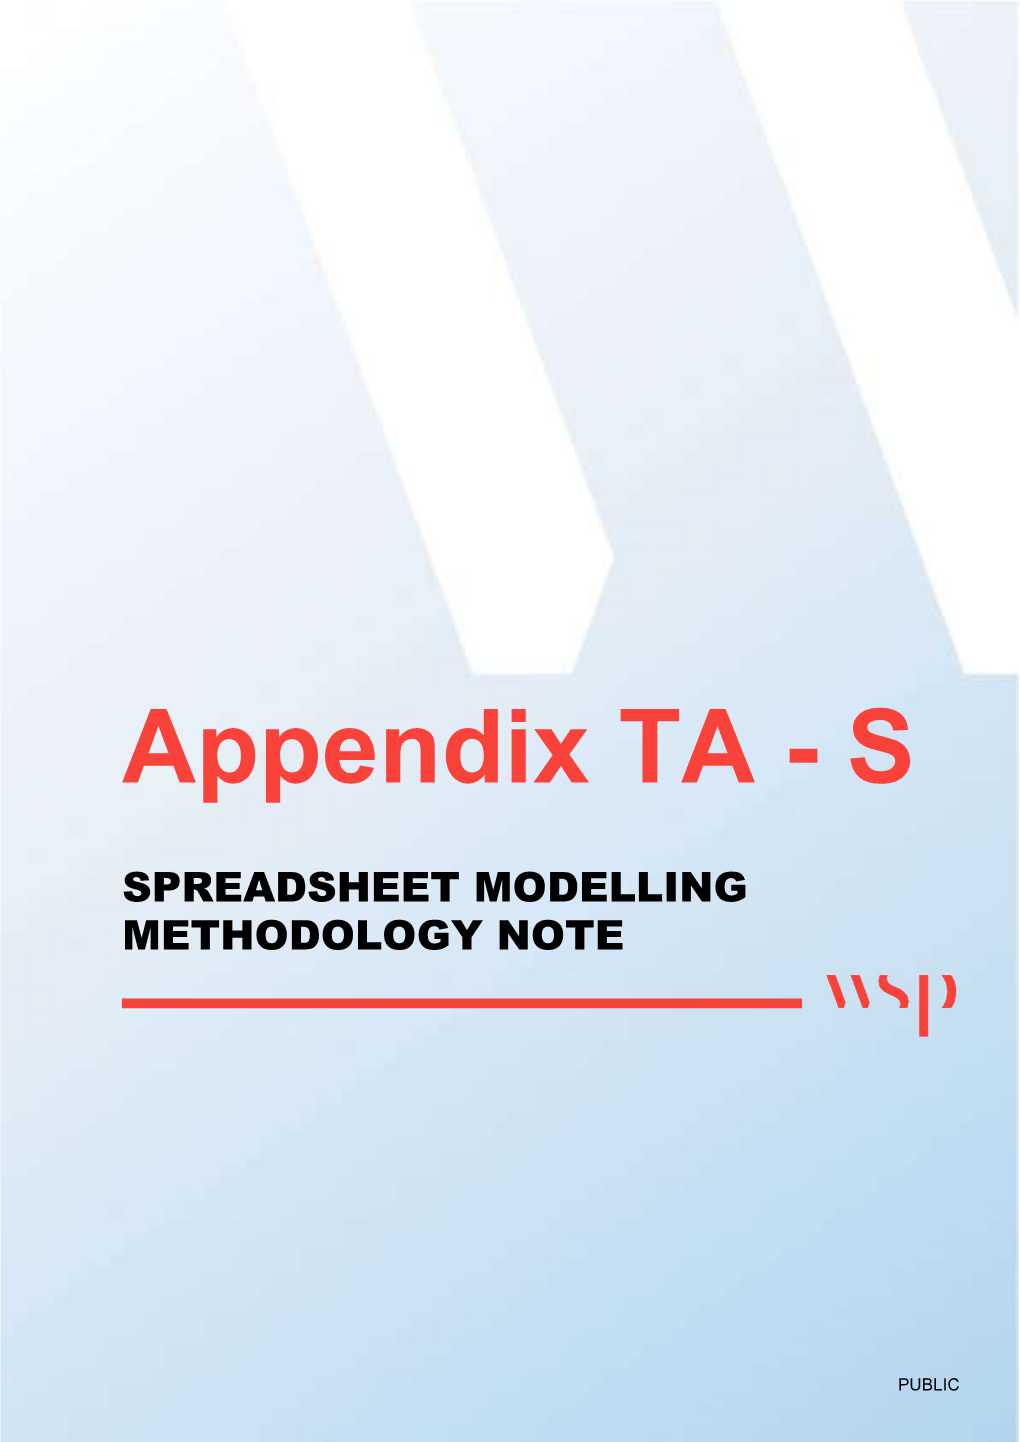 Appendix TA - S